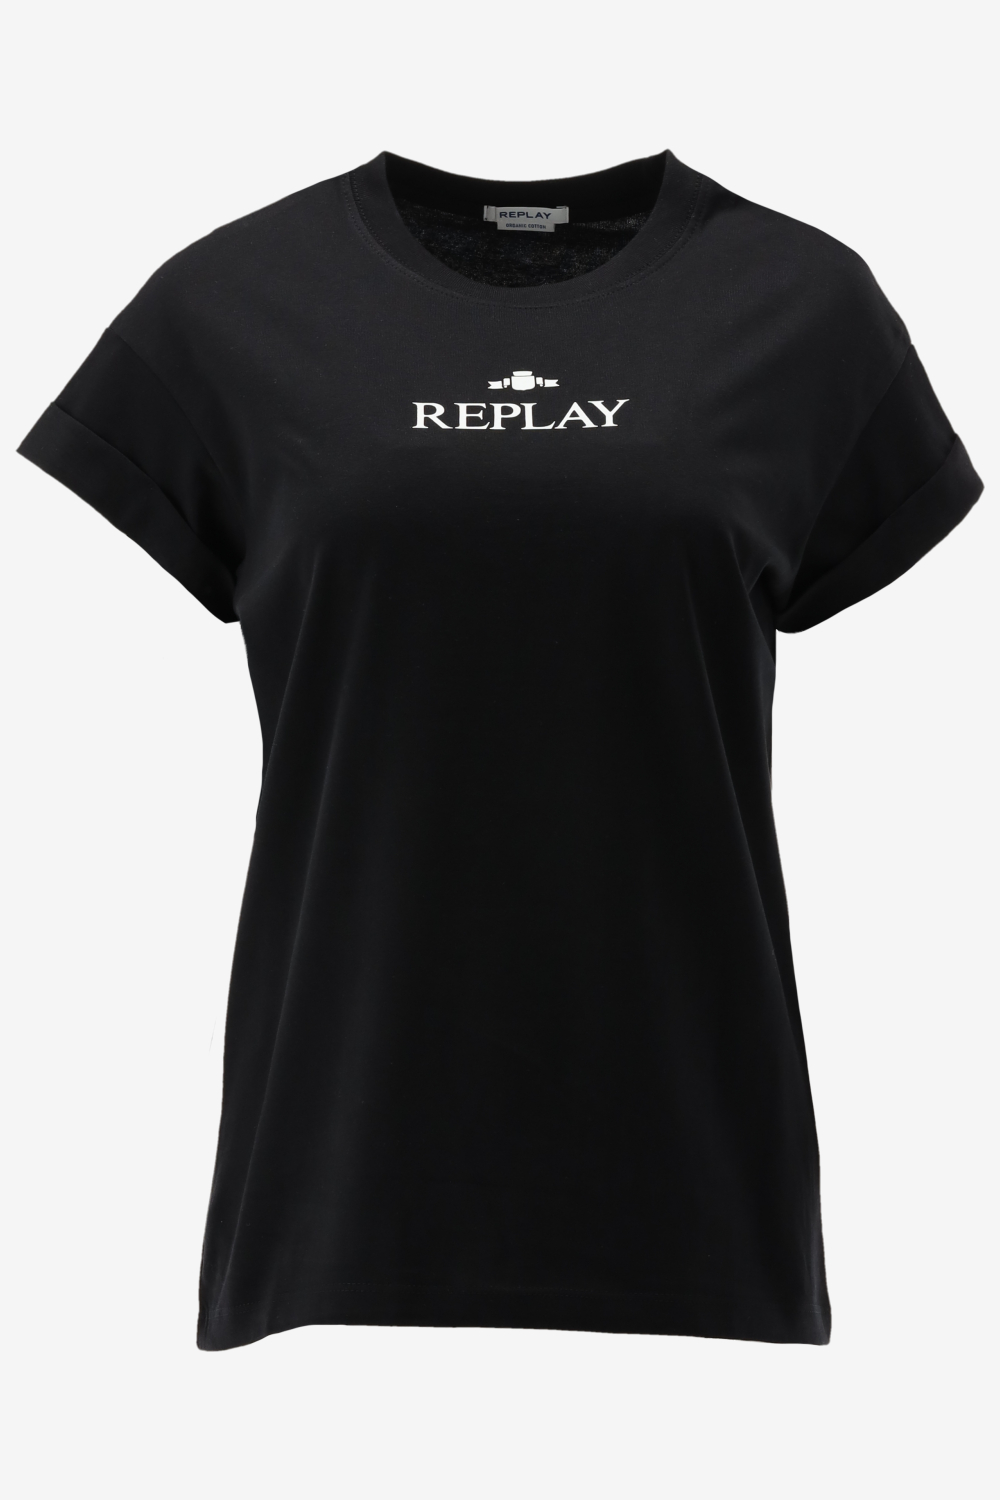 Replay t-shirt maat L